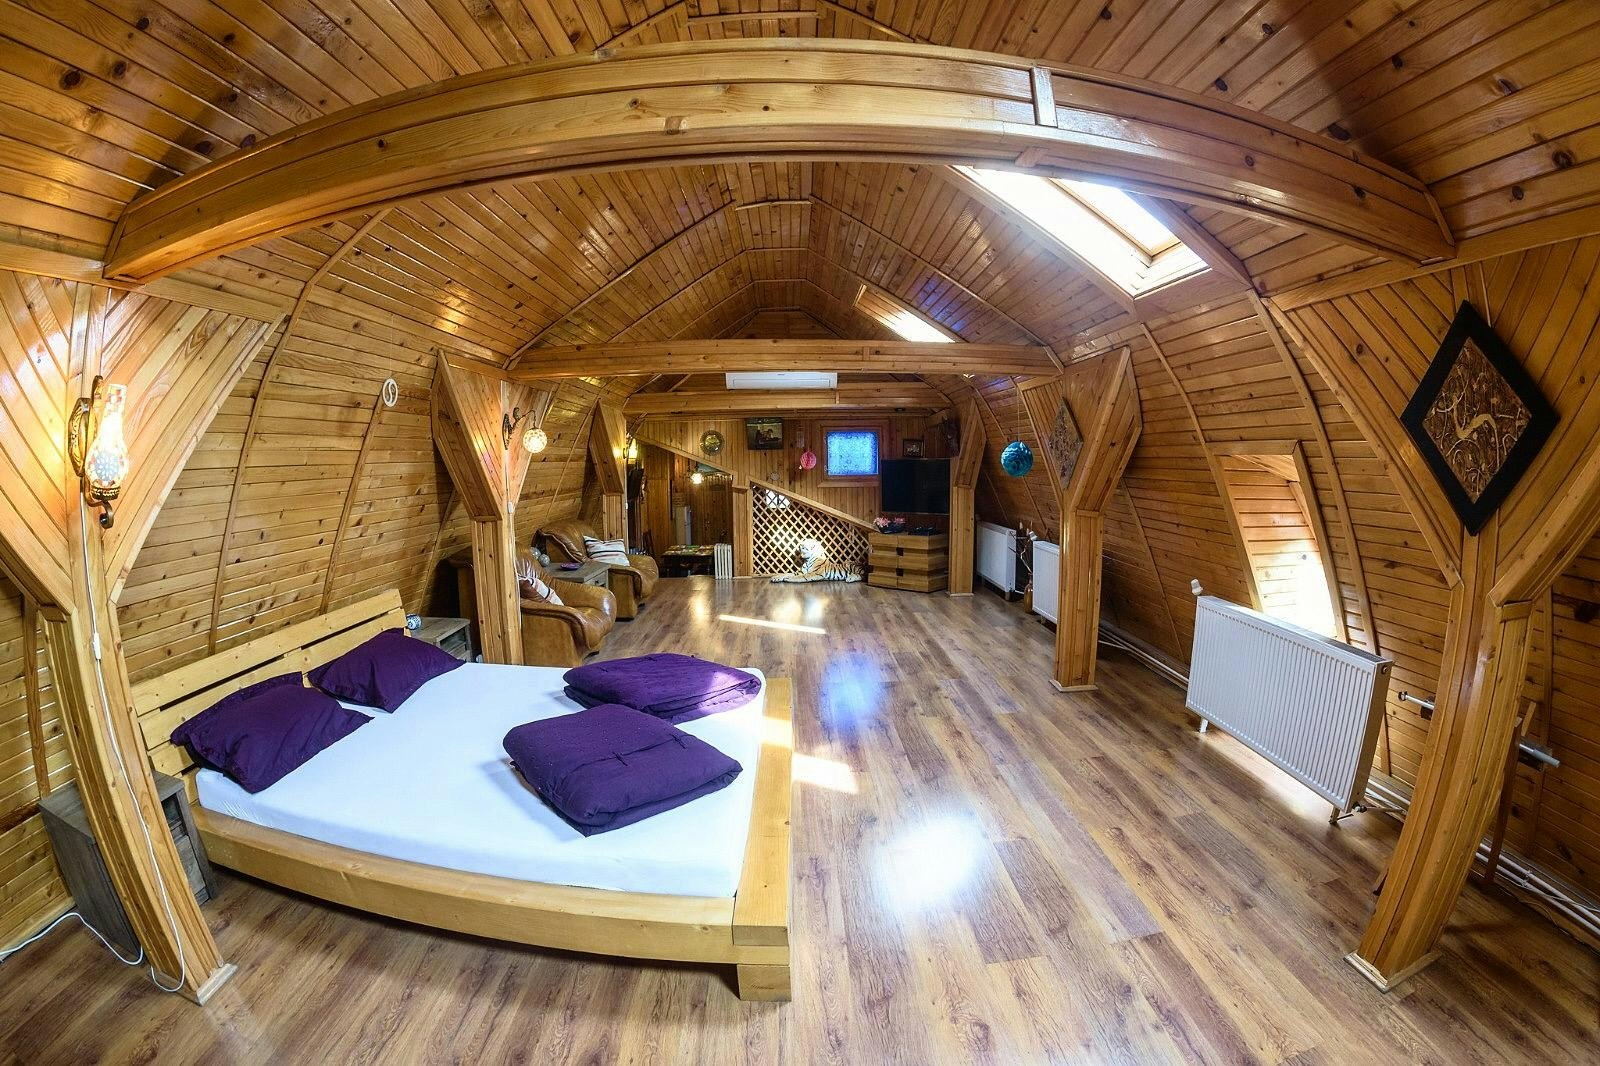 A wooden attic room in Romania